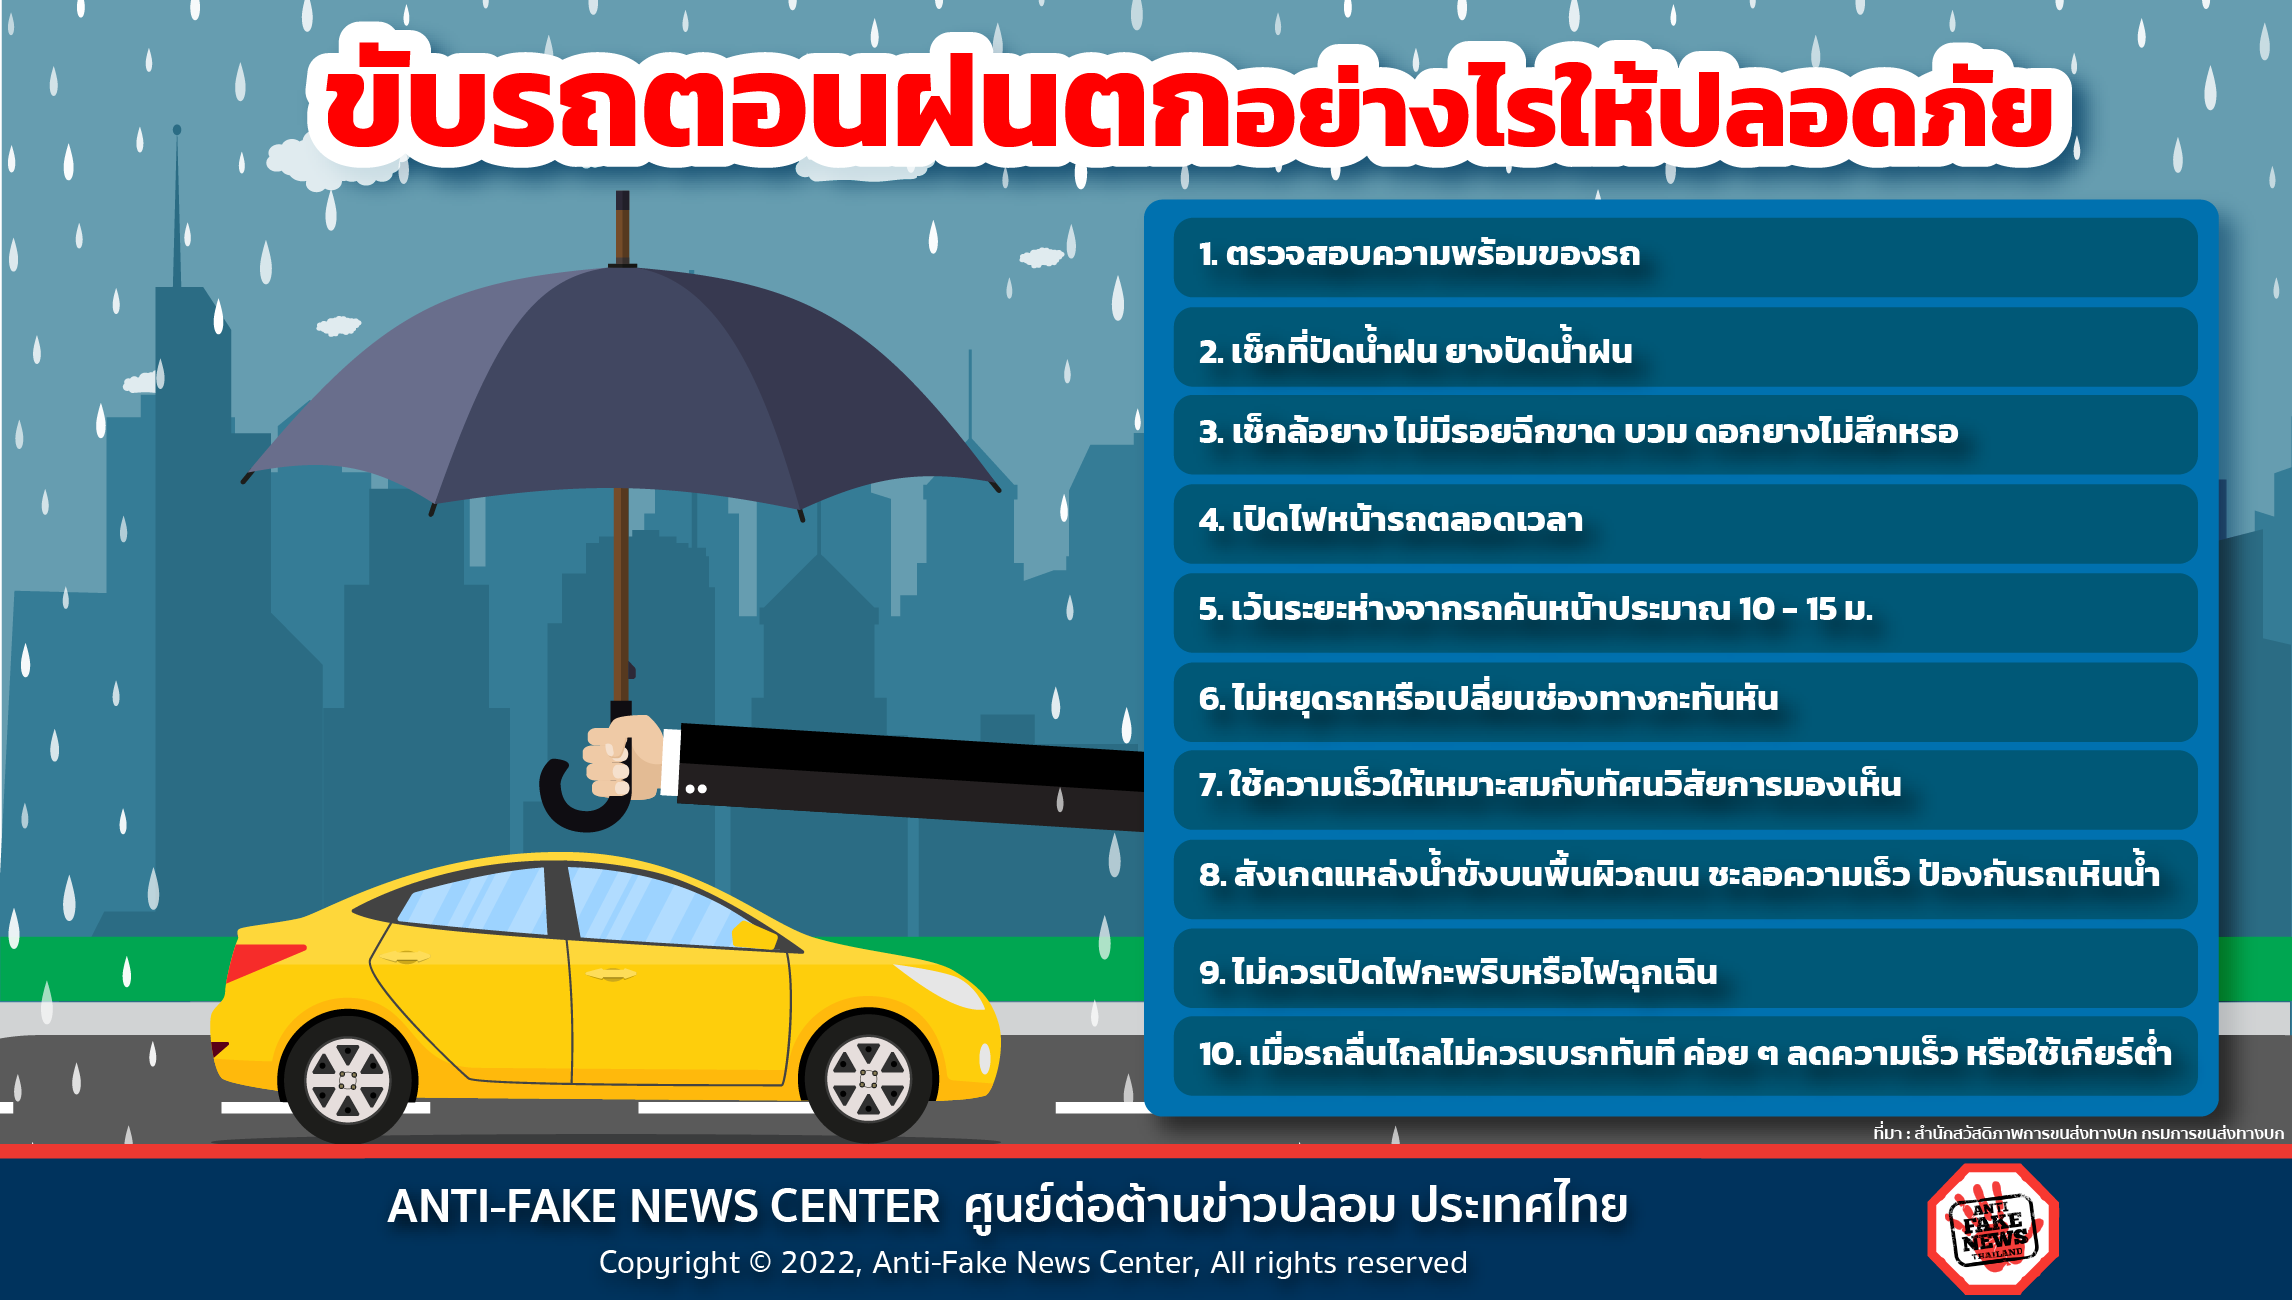 11 Sep 22 ขับรถตอนฝนตกอย่างไรให้ปลอดภัย Web 1